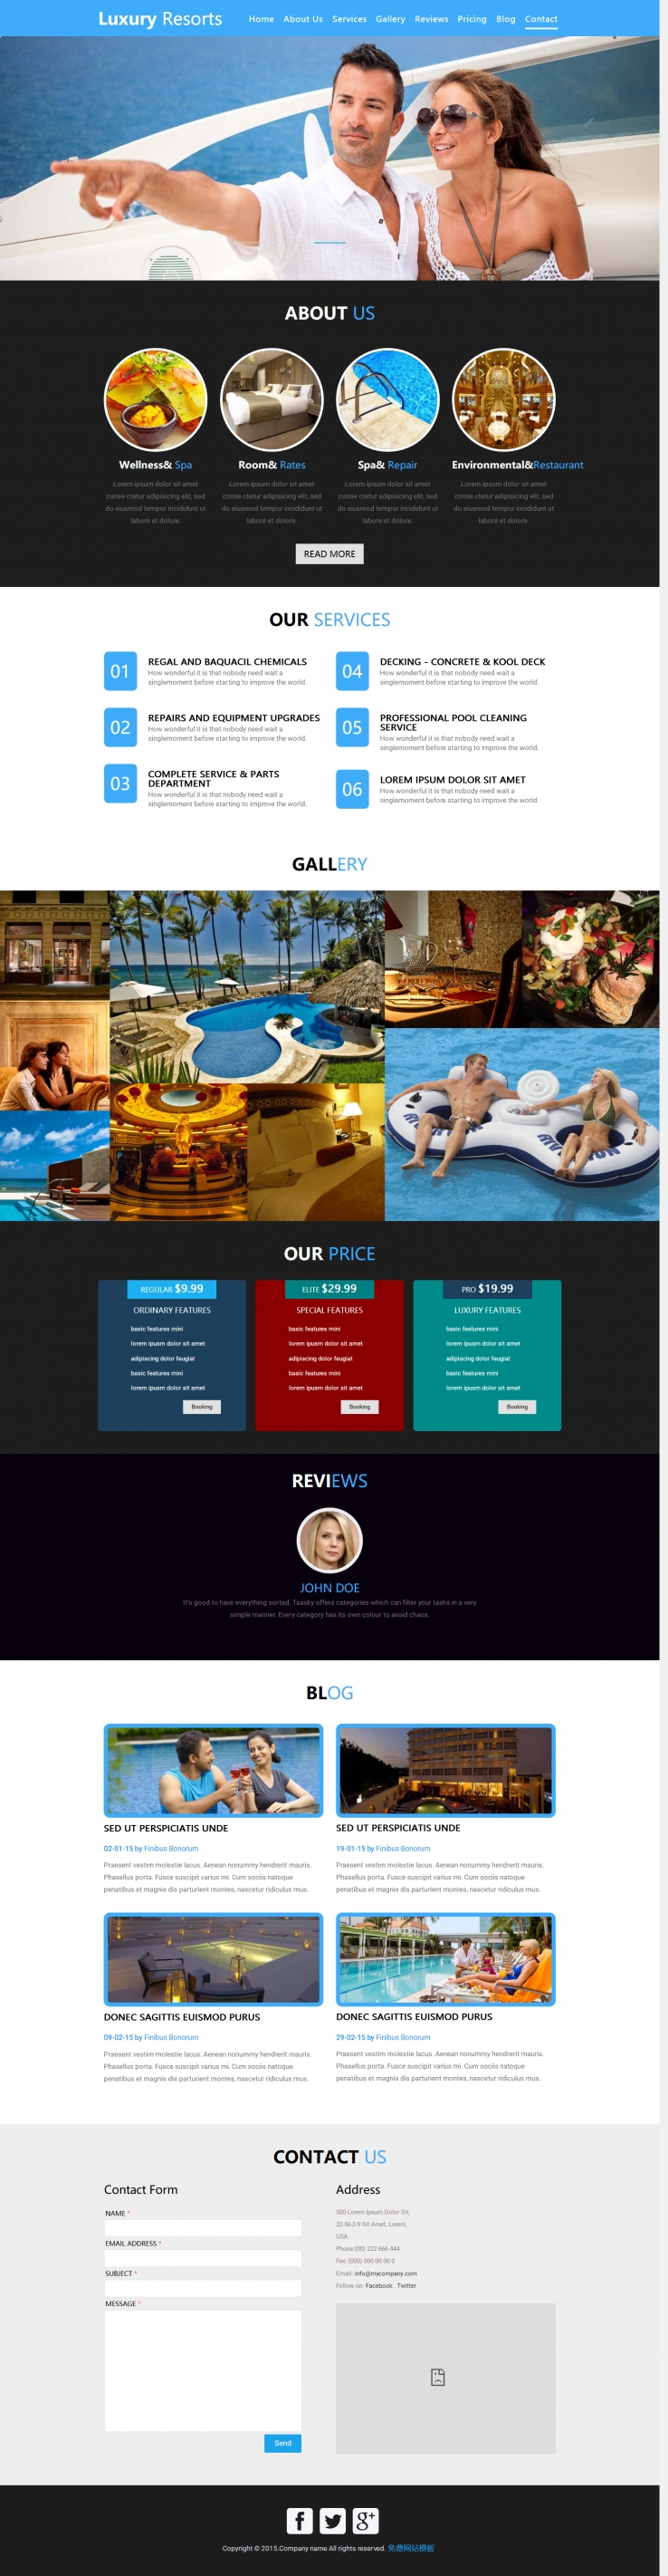 蓝色宽屏风格的高端酒店度假网站模板下载